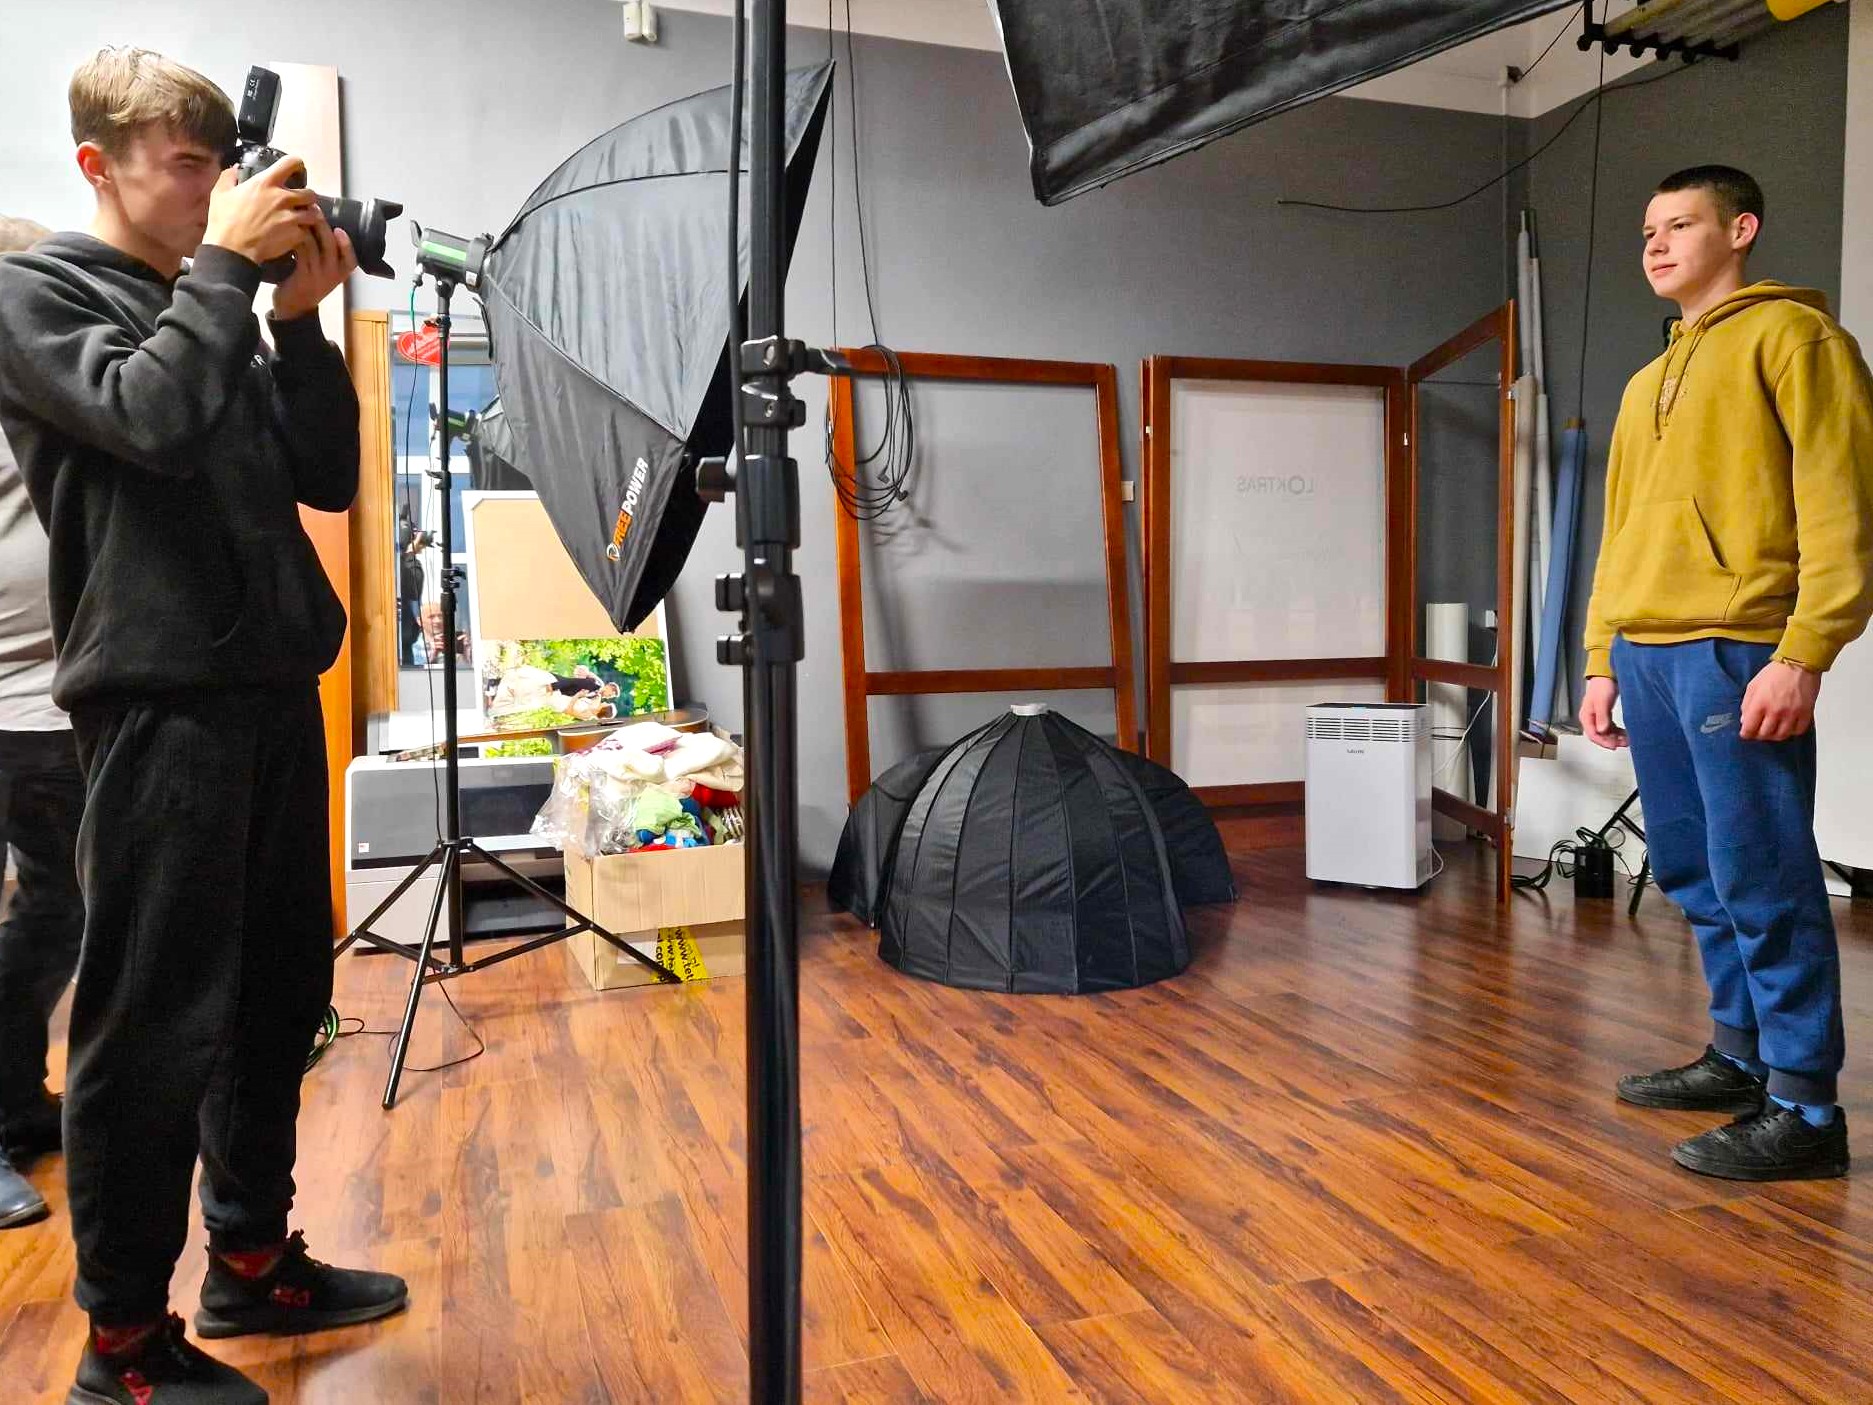 Zajęcia w studio fotograficznym | Chłipiec w czarych dresach stoi bokiem przykładając aparat do twarzy i robi zdjęcie koledze w żółtej bluzie i dżinsach. Wokól nich sprzęty i wyposażenie studia fotograficznego - lampy na statywach, rekwizyty..jpg